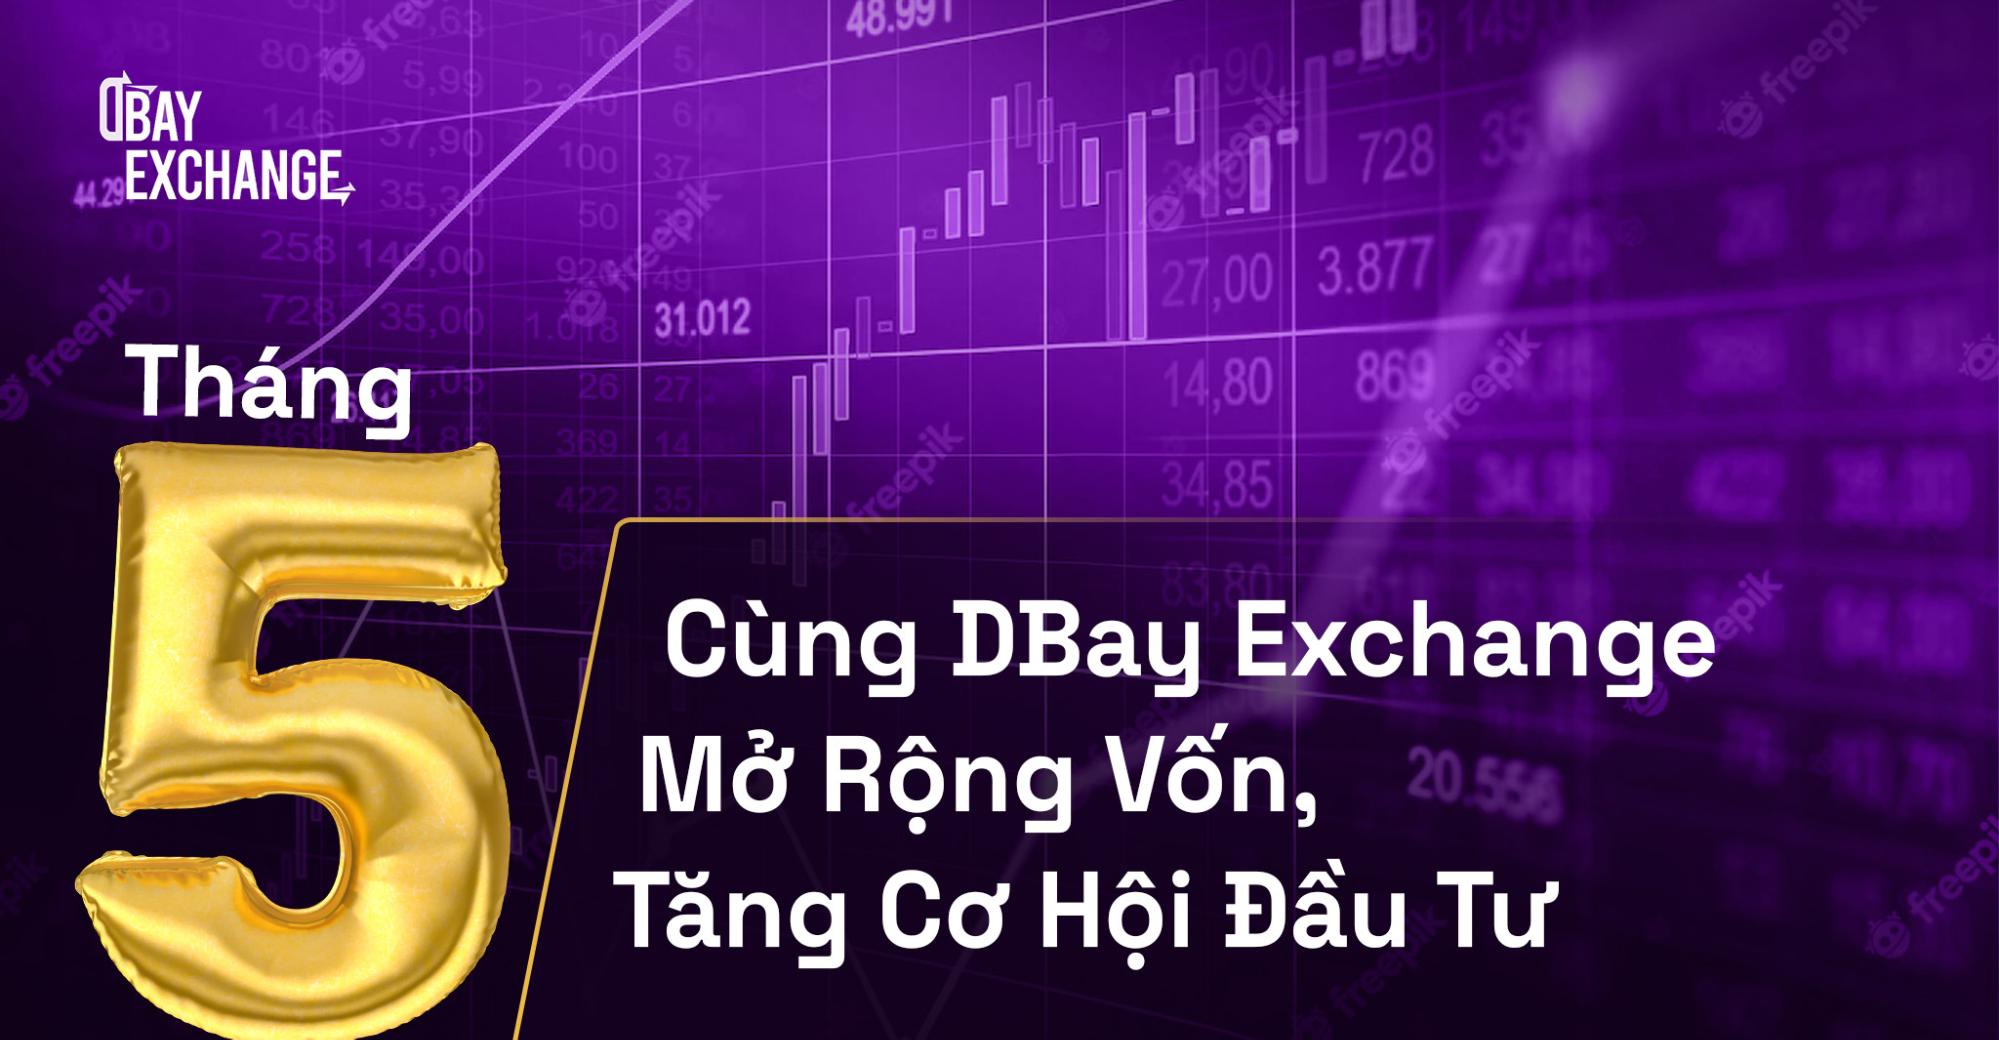 Tháng 5 cùng DBay Exchange mở rộng vốn, tăng cơ hội đầu tư